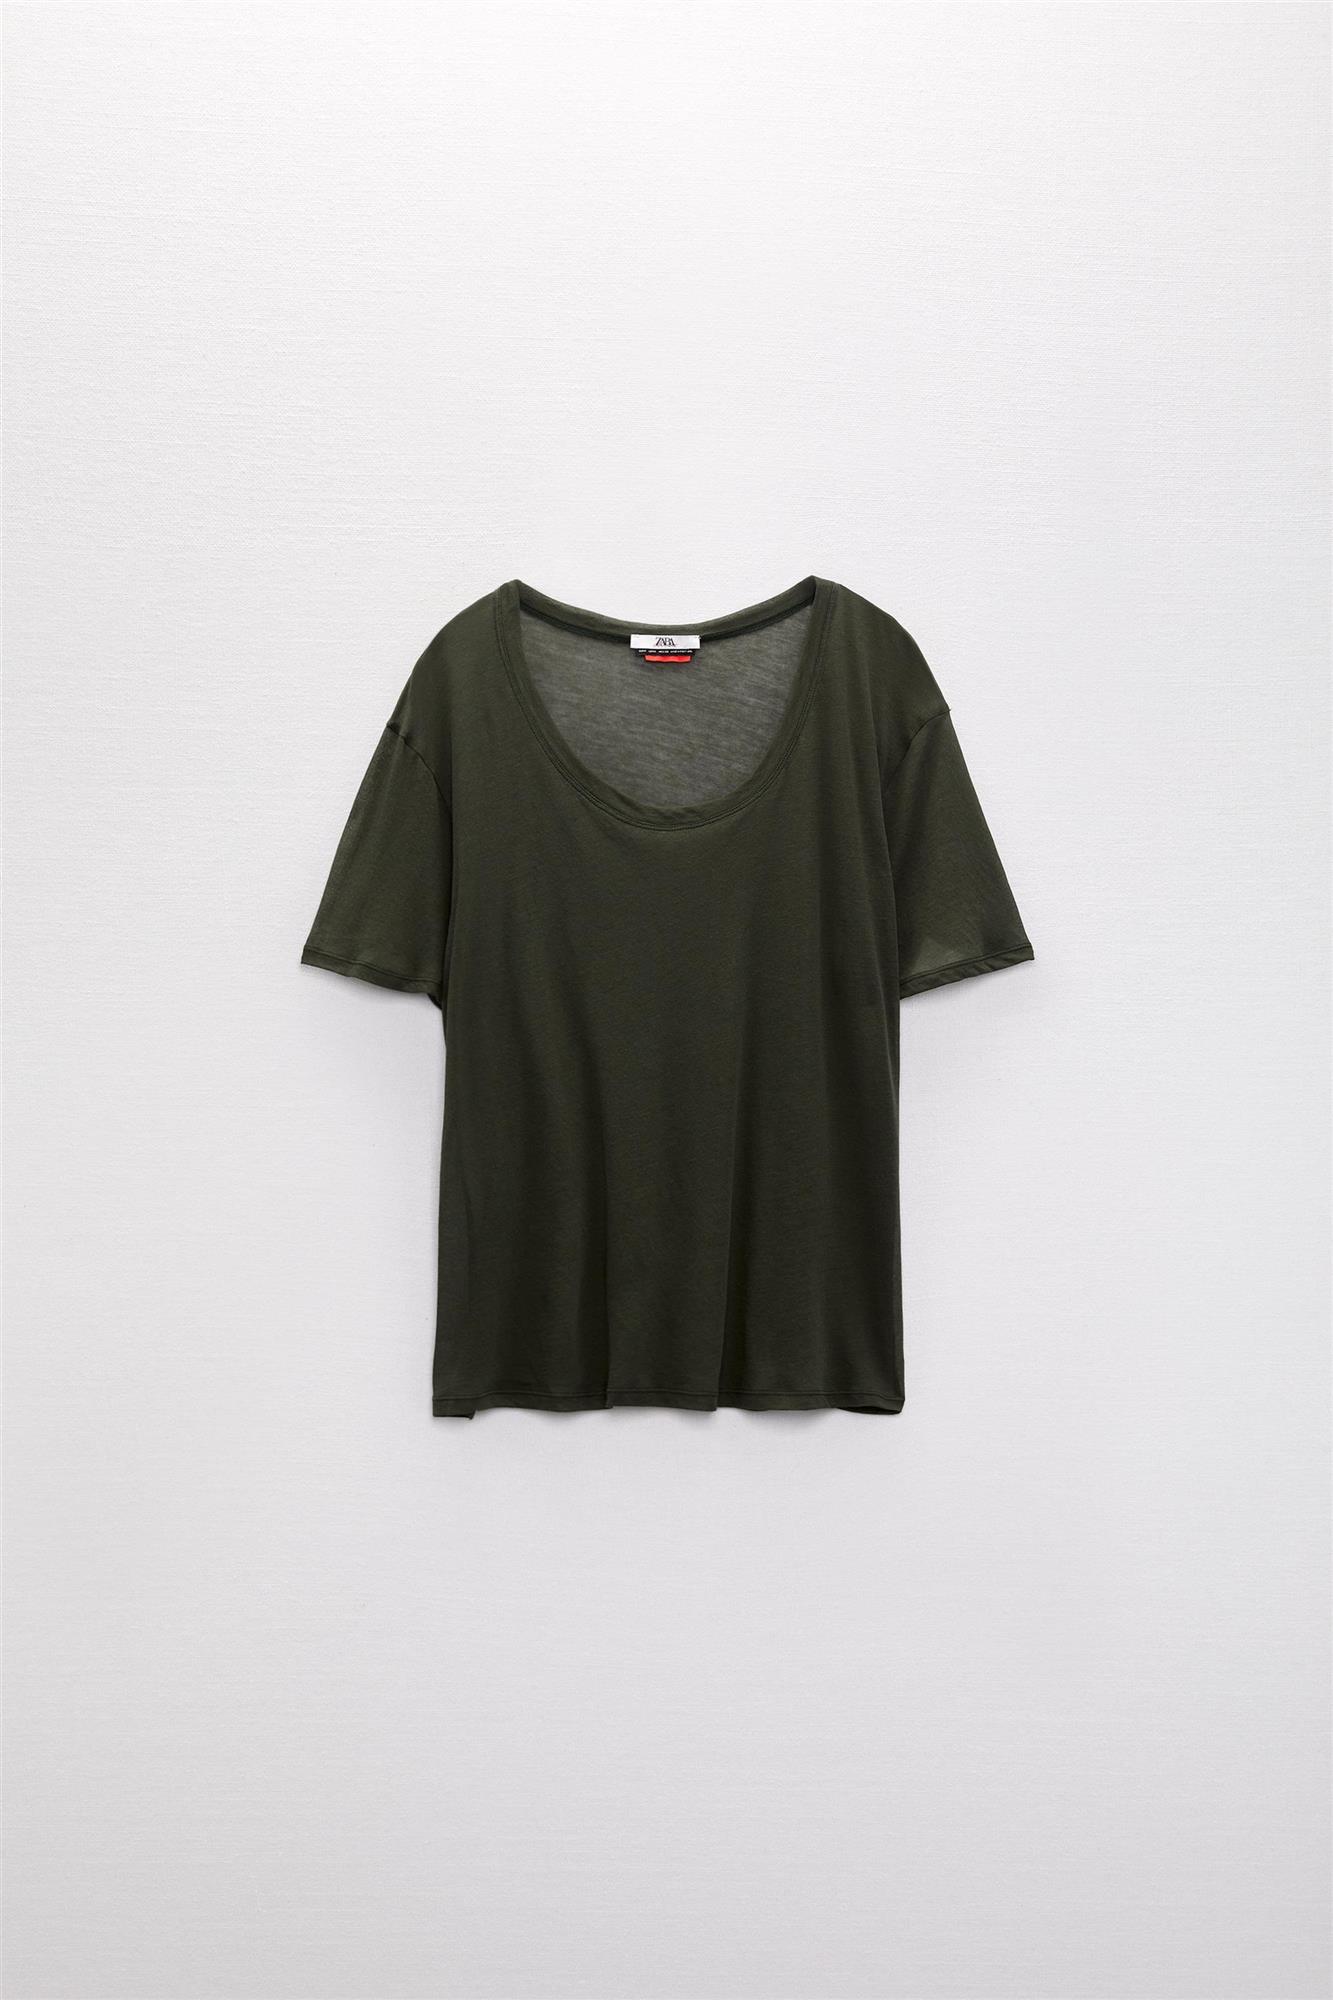 Camiseta de manga corta de Charlotte Gainsbourg para Zara